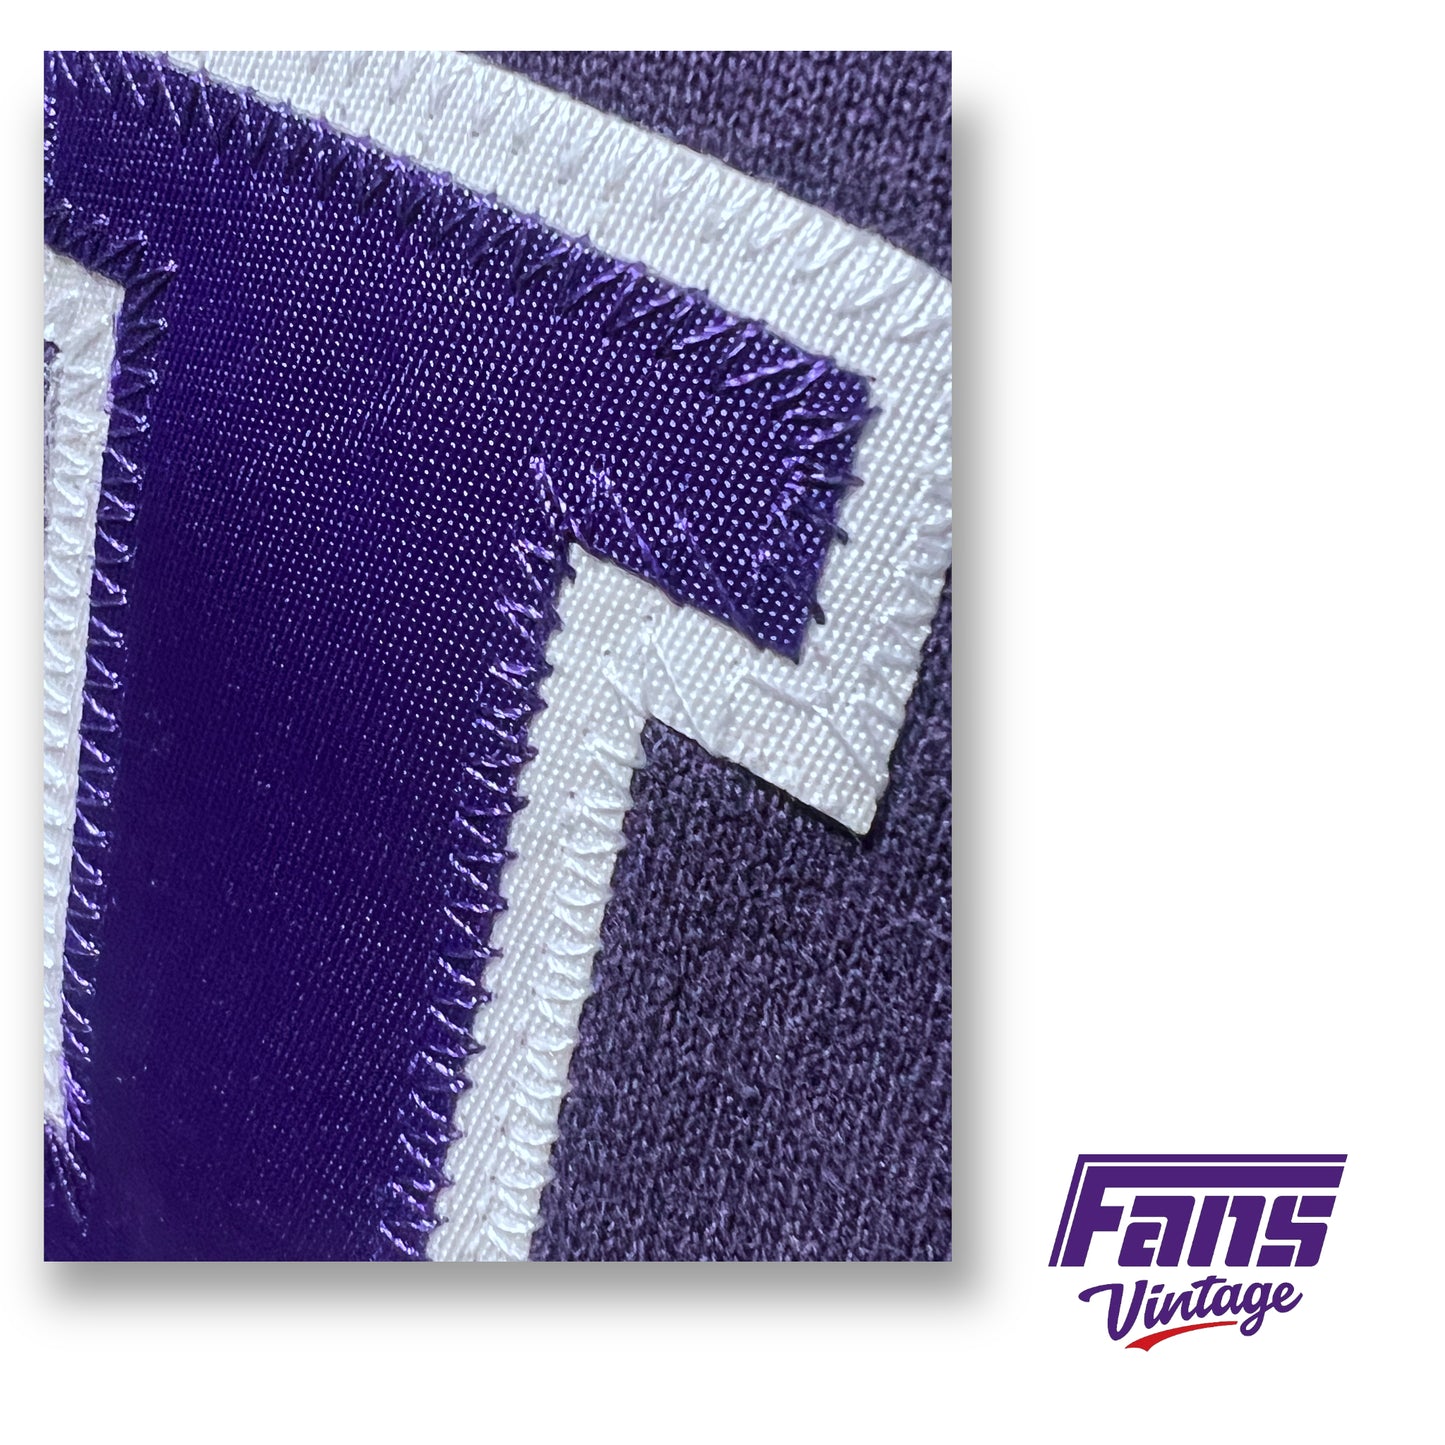 90s Vintage TCU Alumni Crewneck Sweater - Beautiful Purple Satin logo patches!